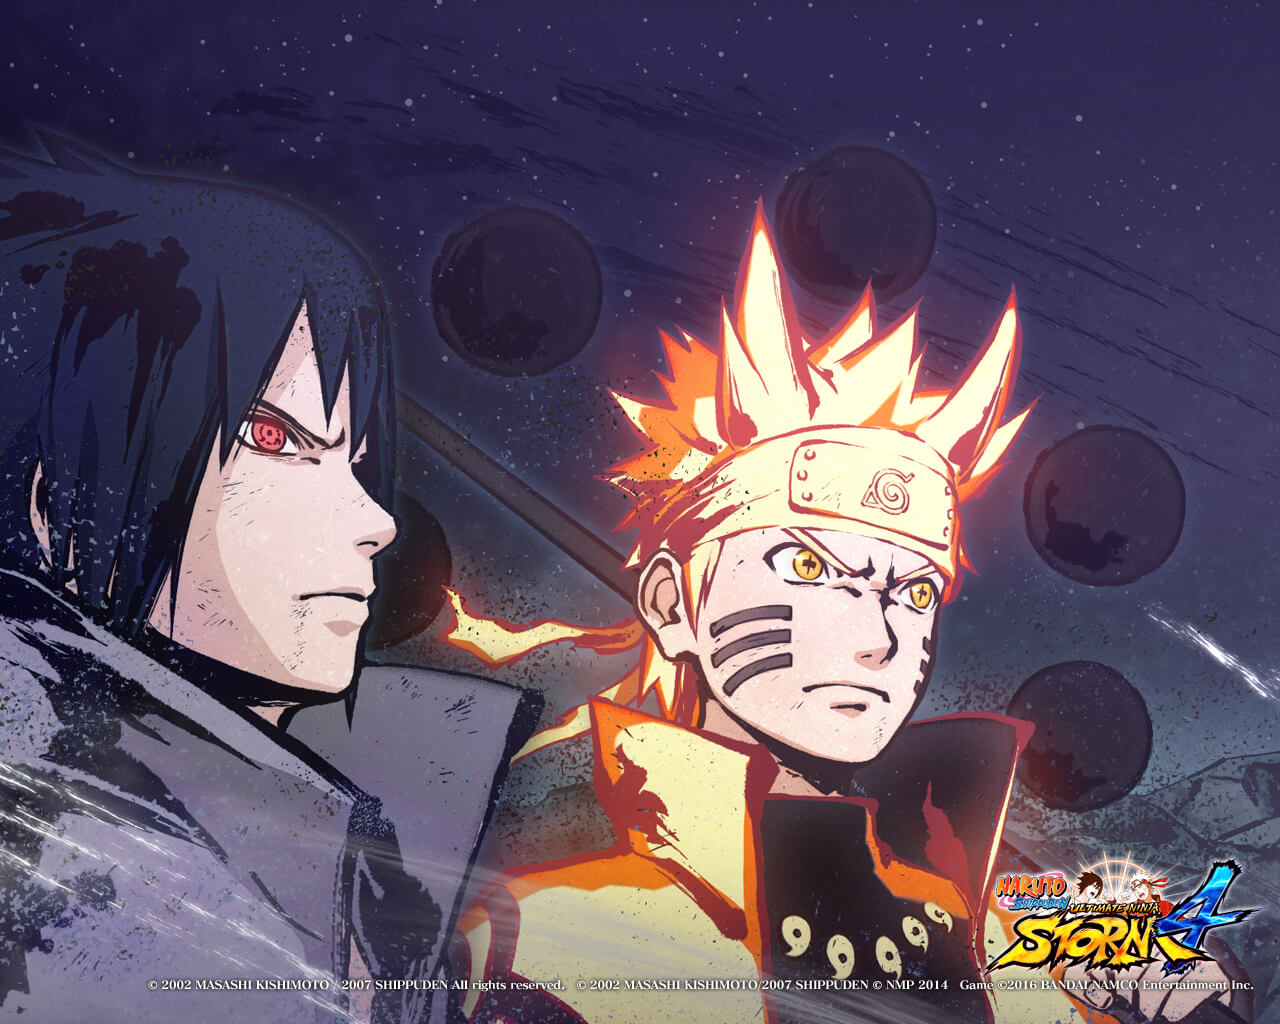 Manga de naruto clássico - Naruto ultimate ninja storm